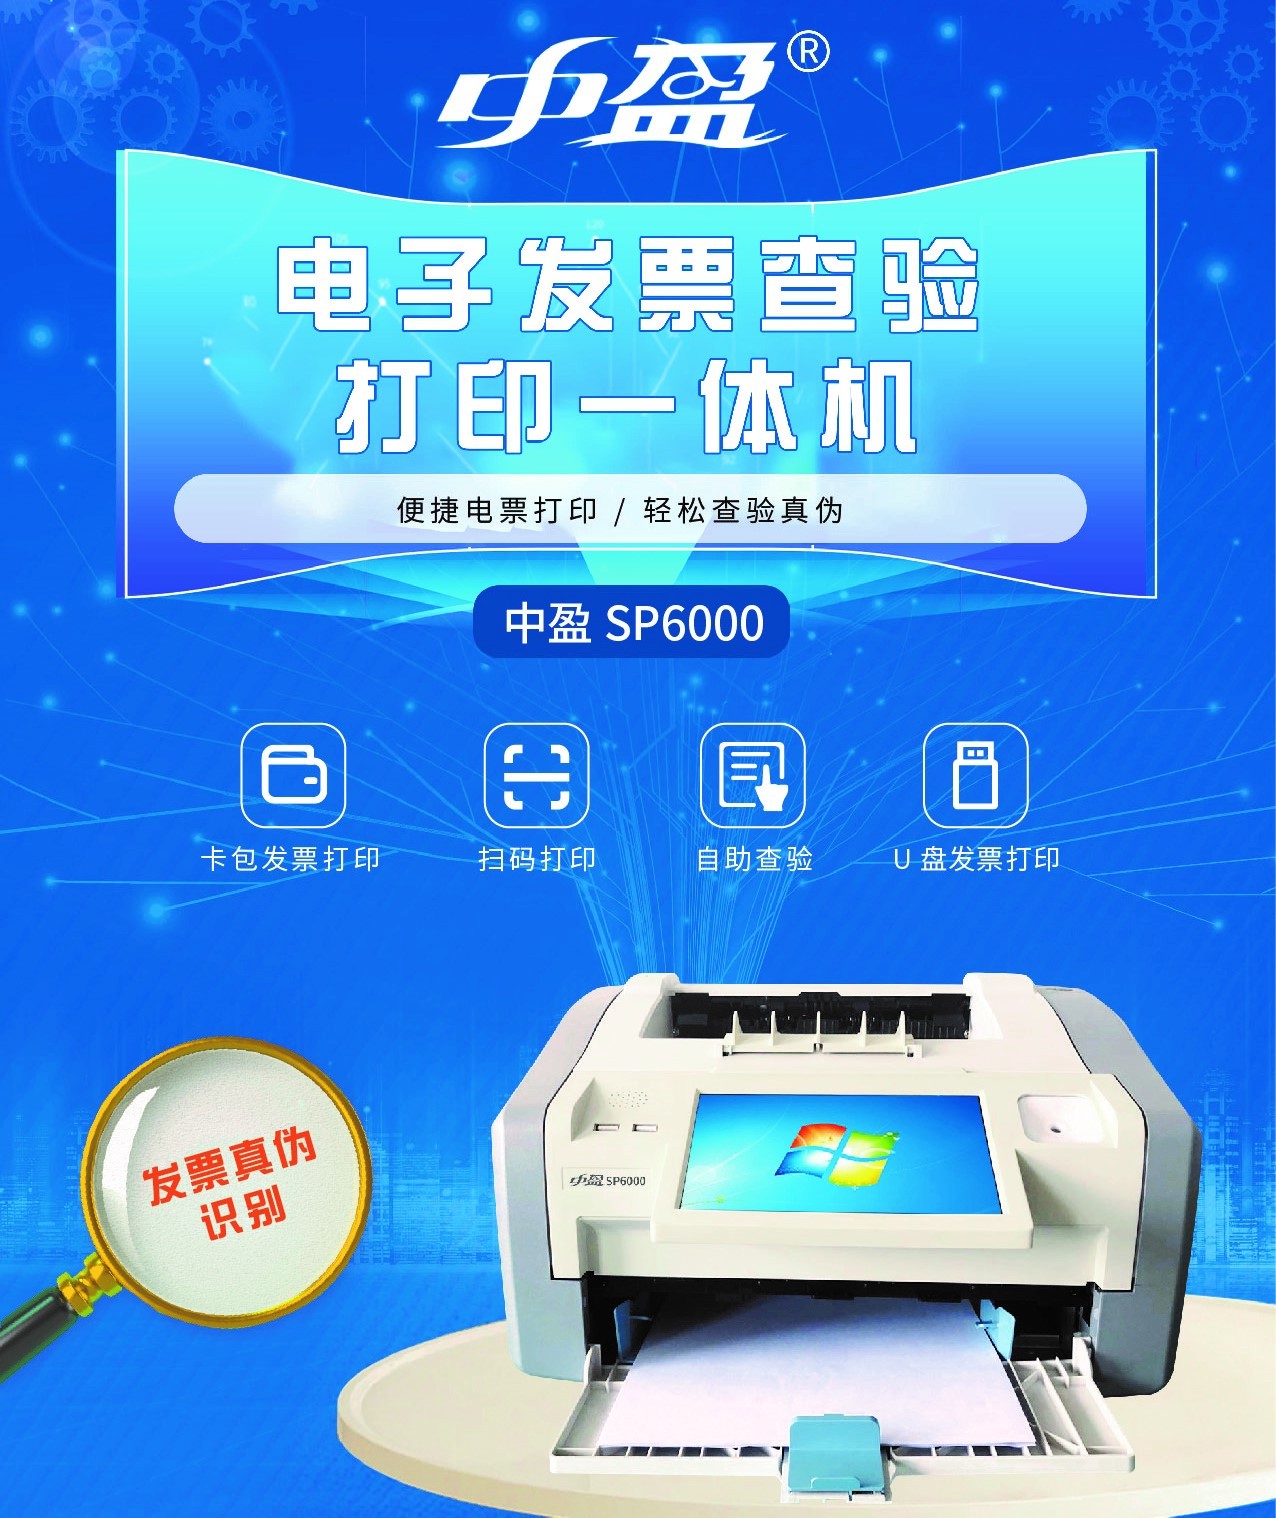 WeChat Image_20201026160851.jpg